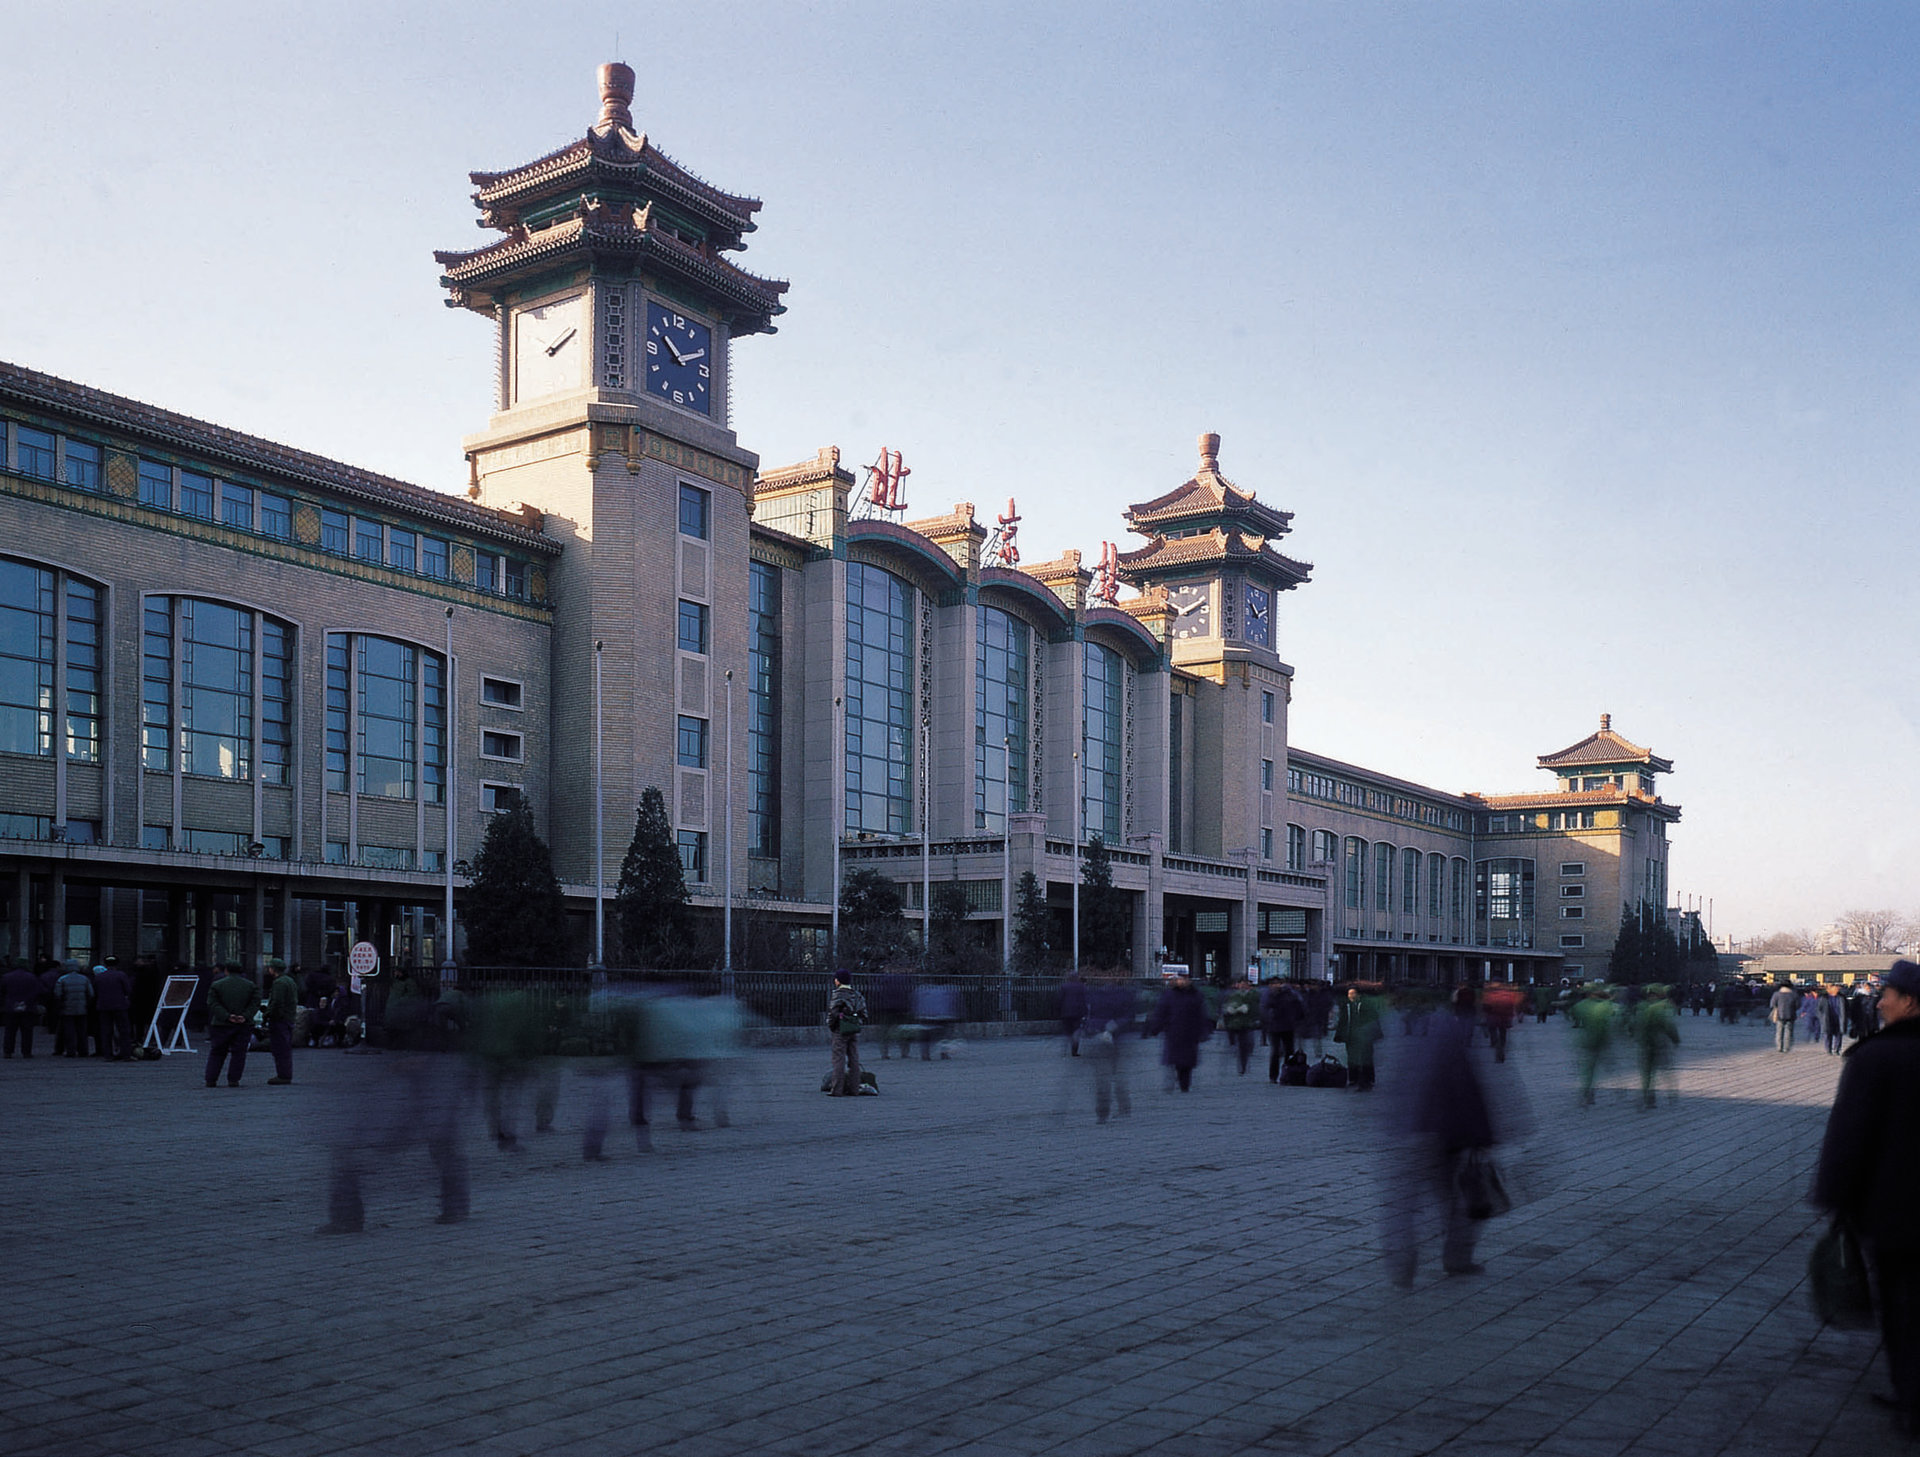 1958年设计  中国建筑学会建国60周年建筑创作大奖